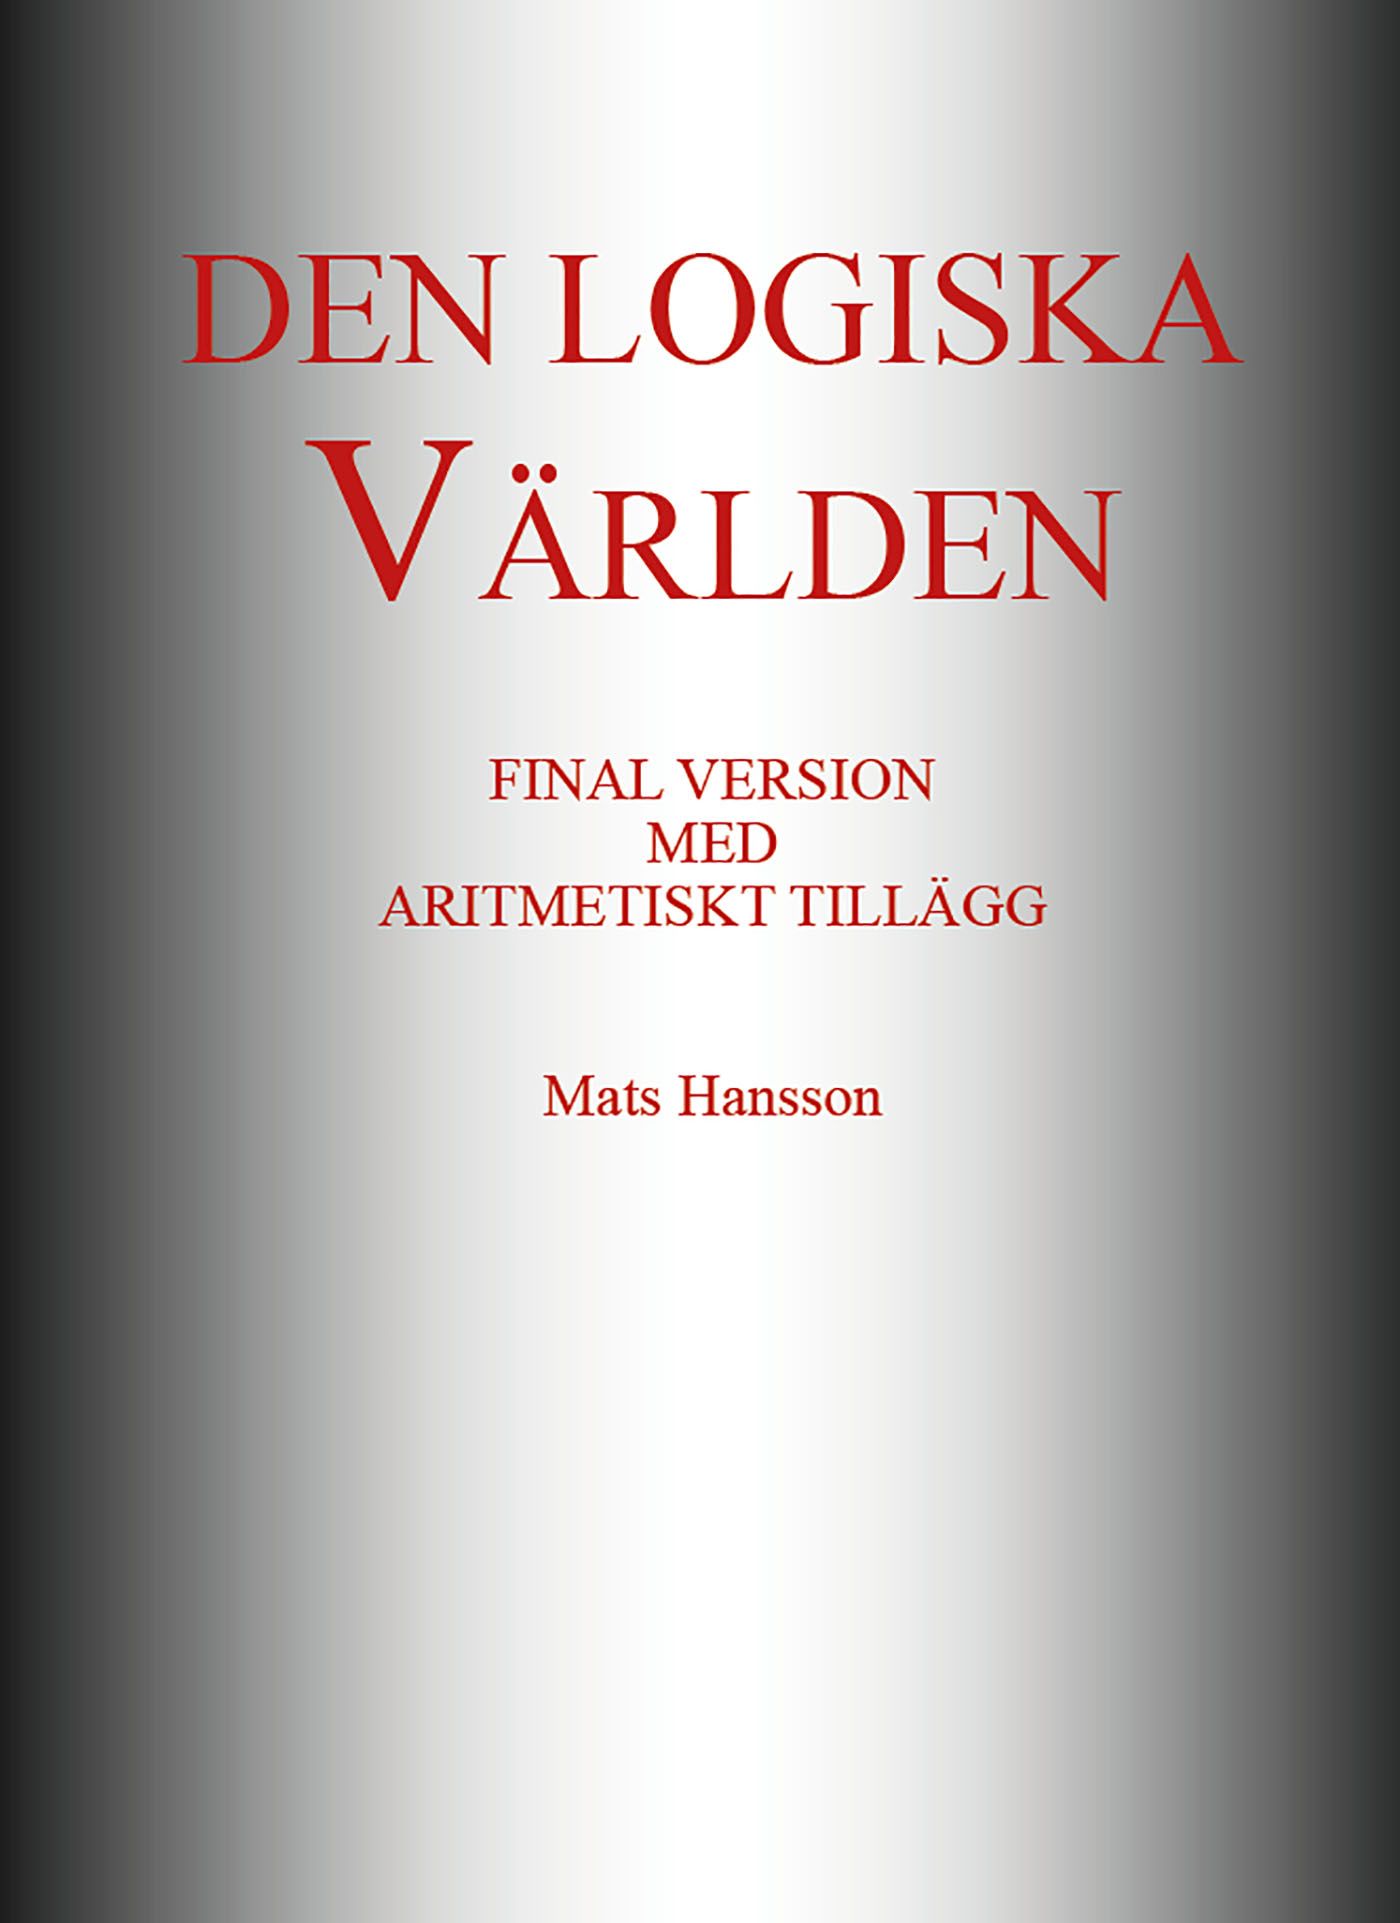 Den logiska Världen, e-bok av Mats Hansson